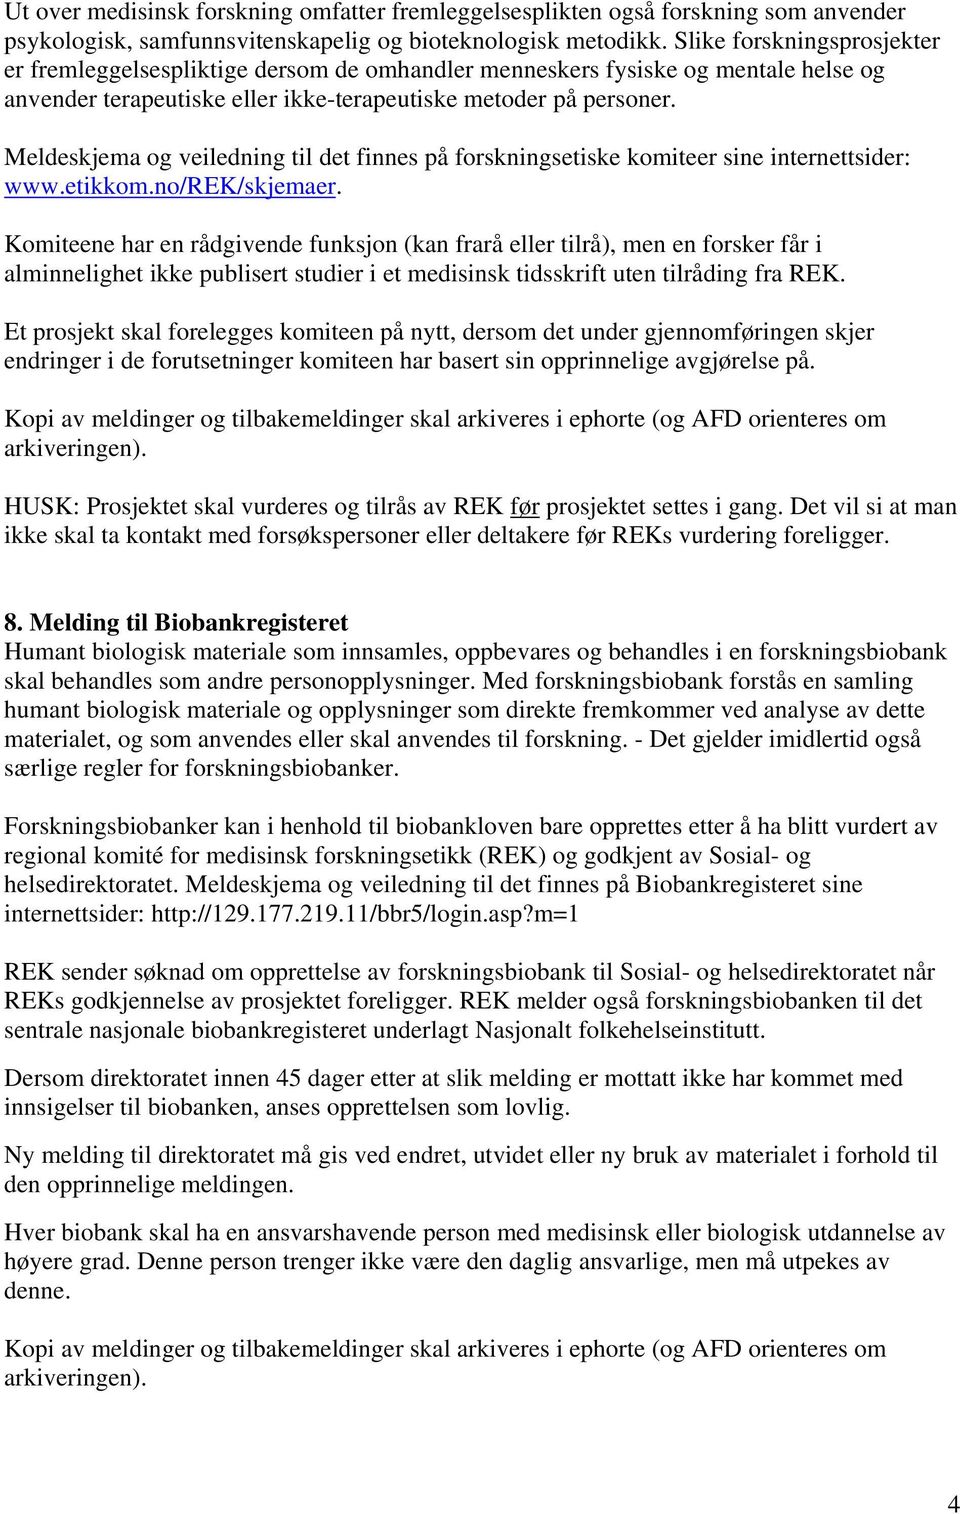 Meldeskjema og veiledning til det finnes på forskningsetiske komiteer sine internettsider: www.etikkom.no/rek/skjemaer.